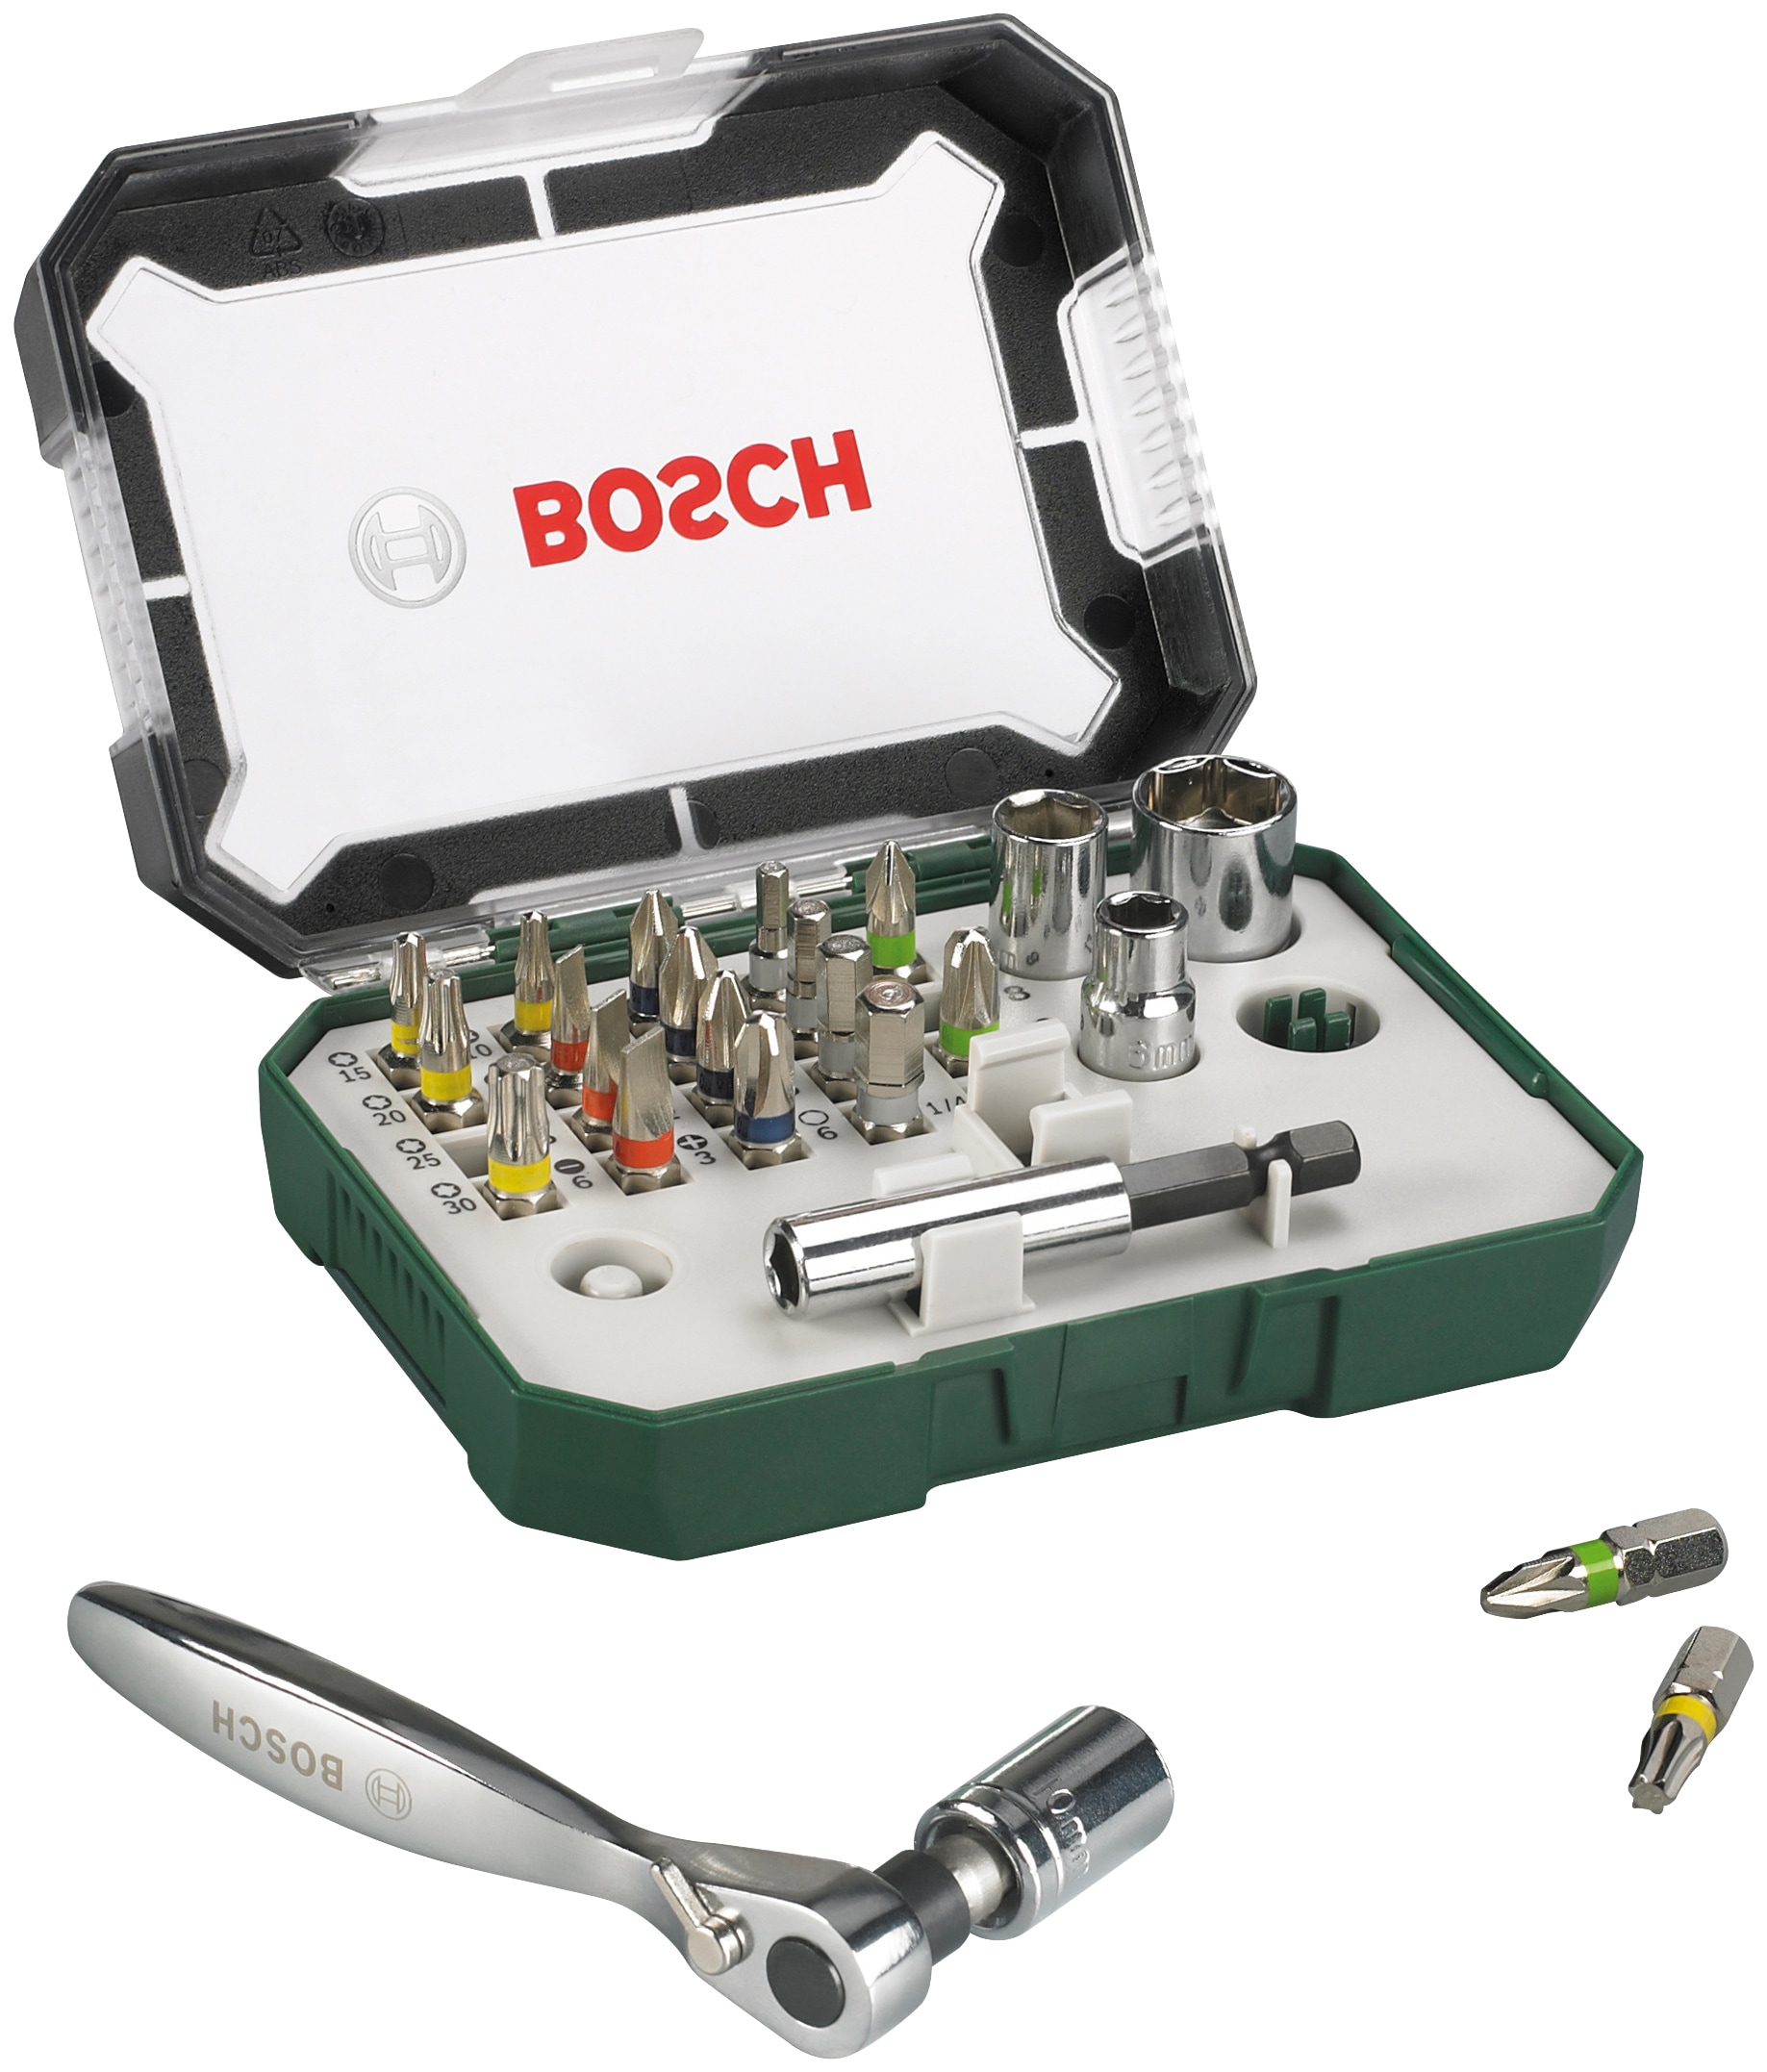 27-teilig, online kaufen Set, & Bit-Set Bosch Home »double SDB-Set, zusätzlicher mit Schrauberbit- Garden Ratsche end«,